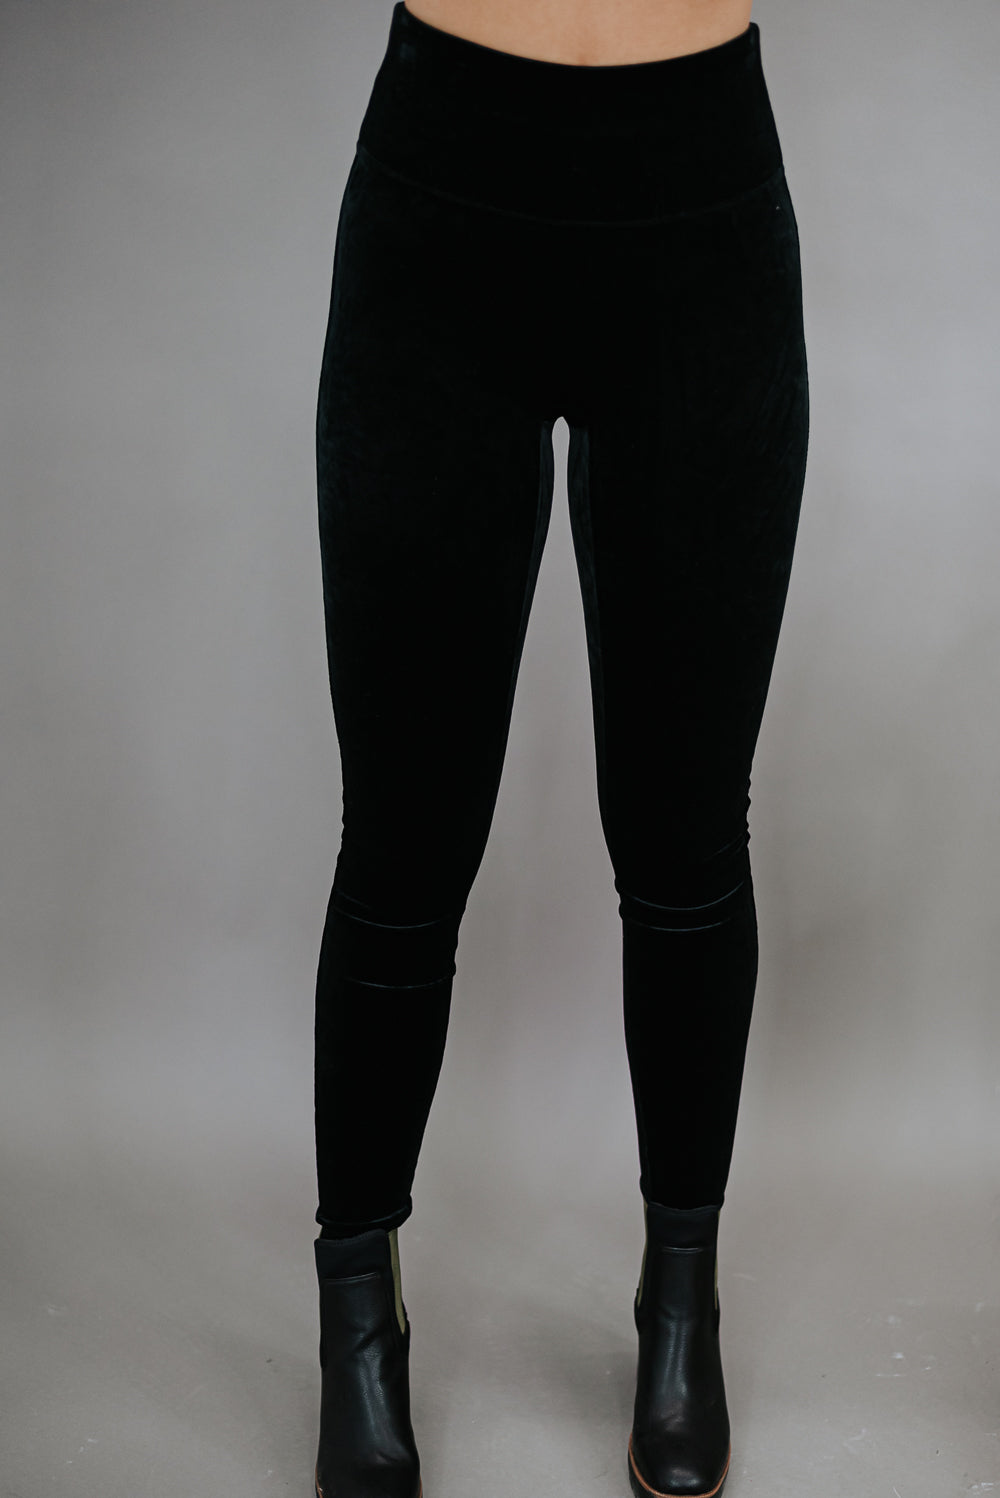 SPANX Plus Size Velvet Leggings Black 1X 28 : Buy Online at Best